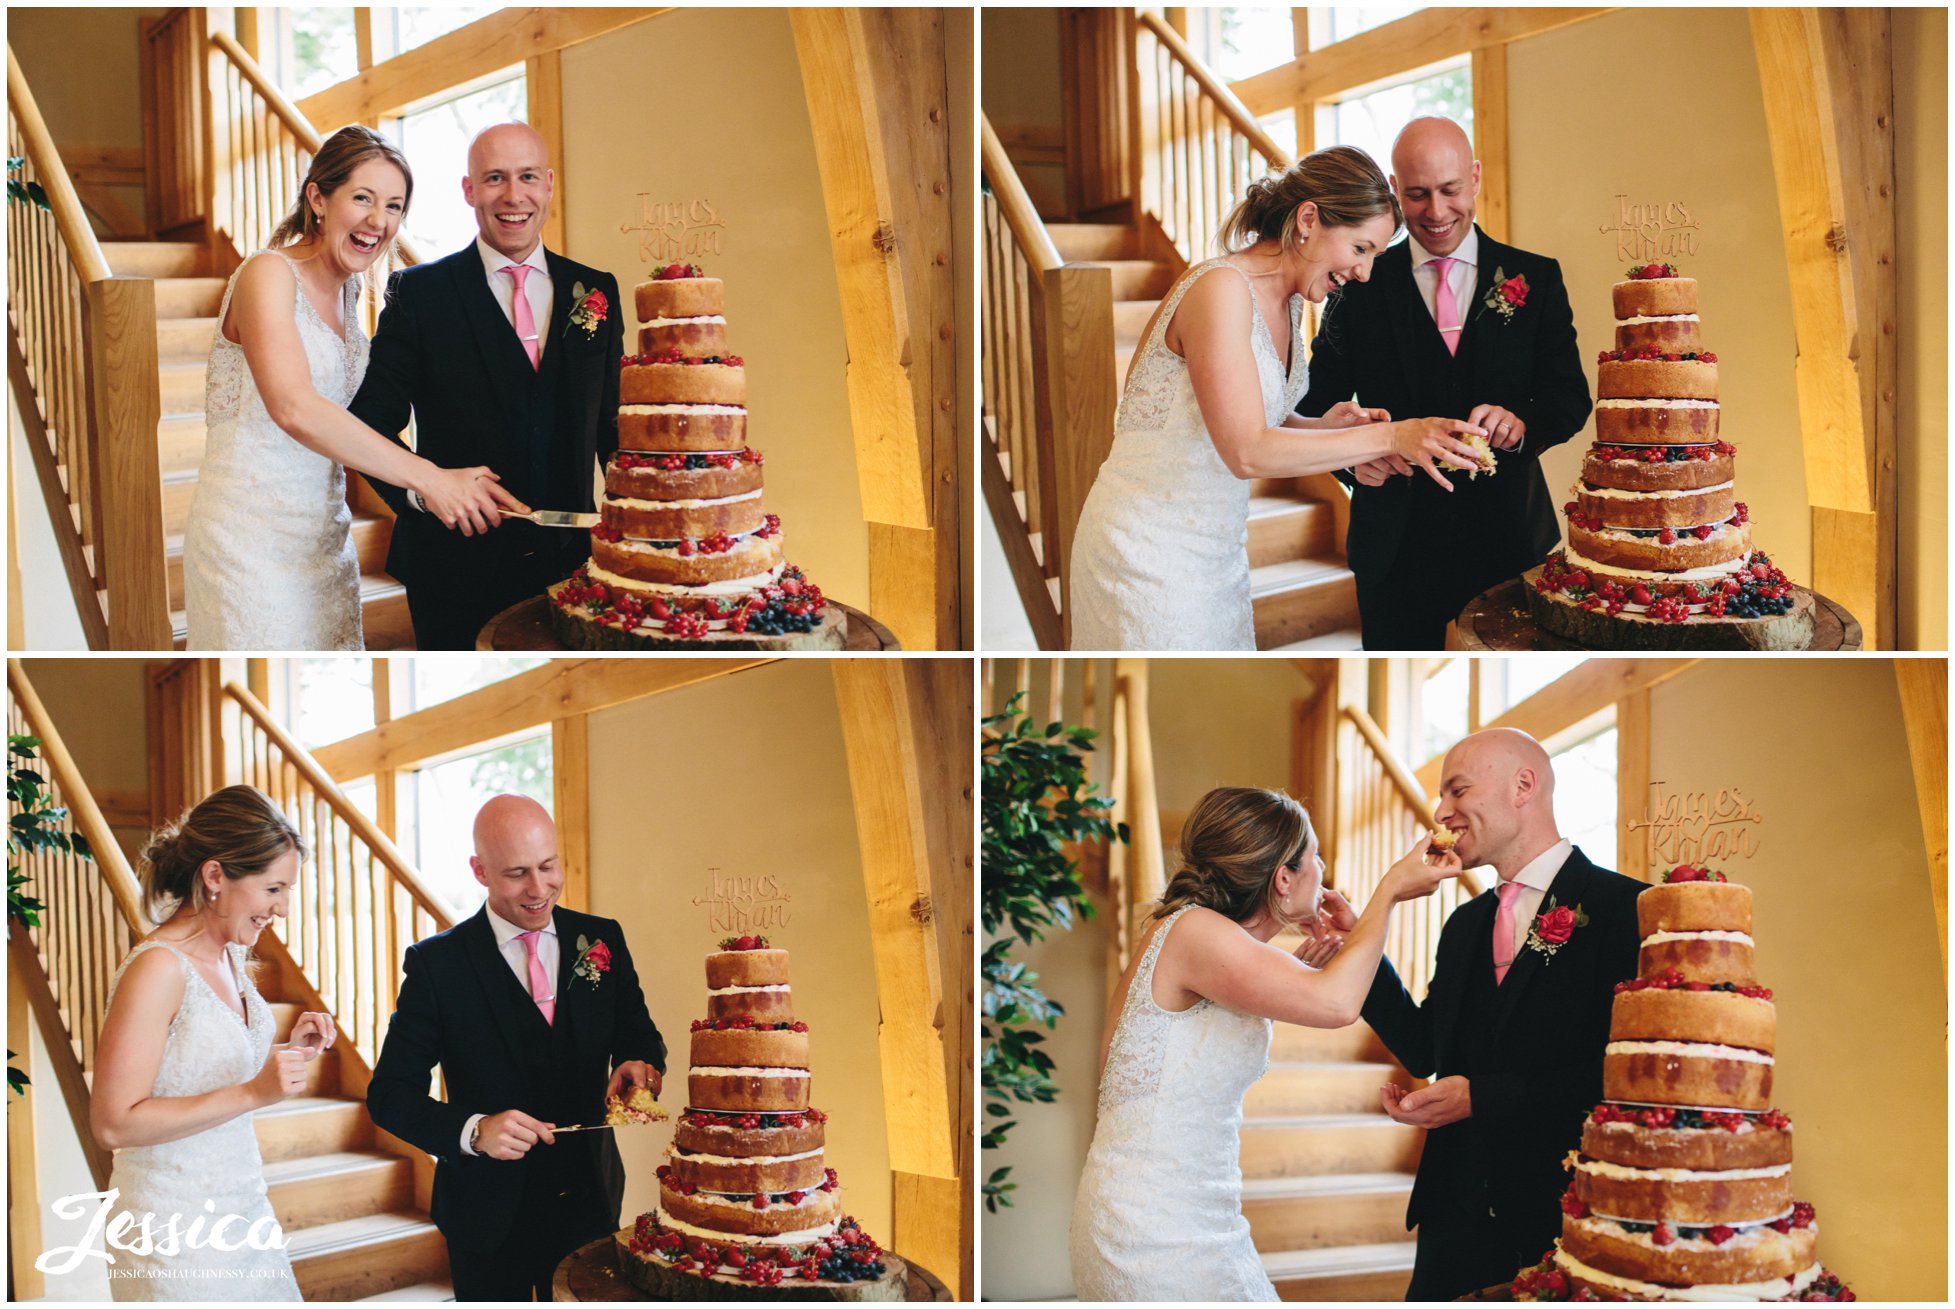 bride & groom cutting their cake on their wedding day